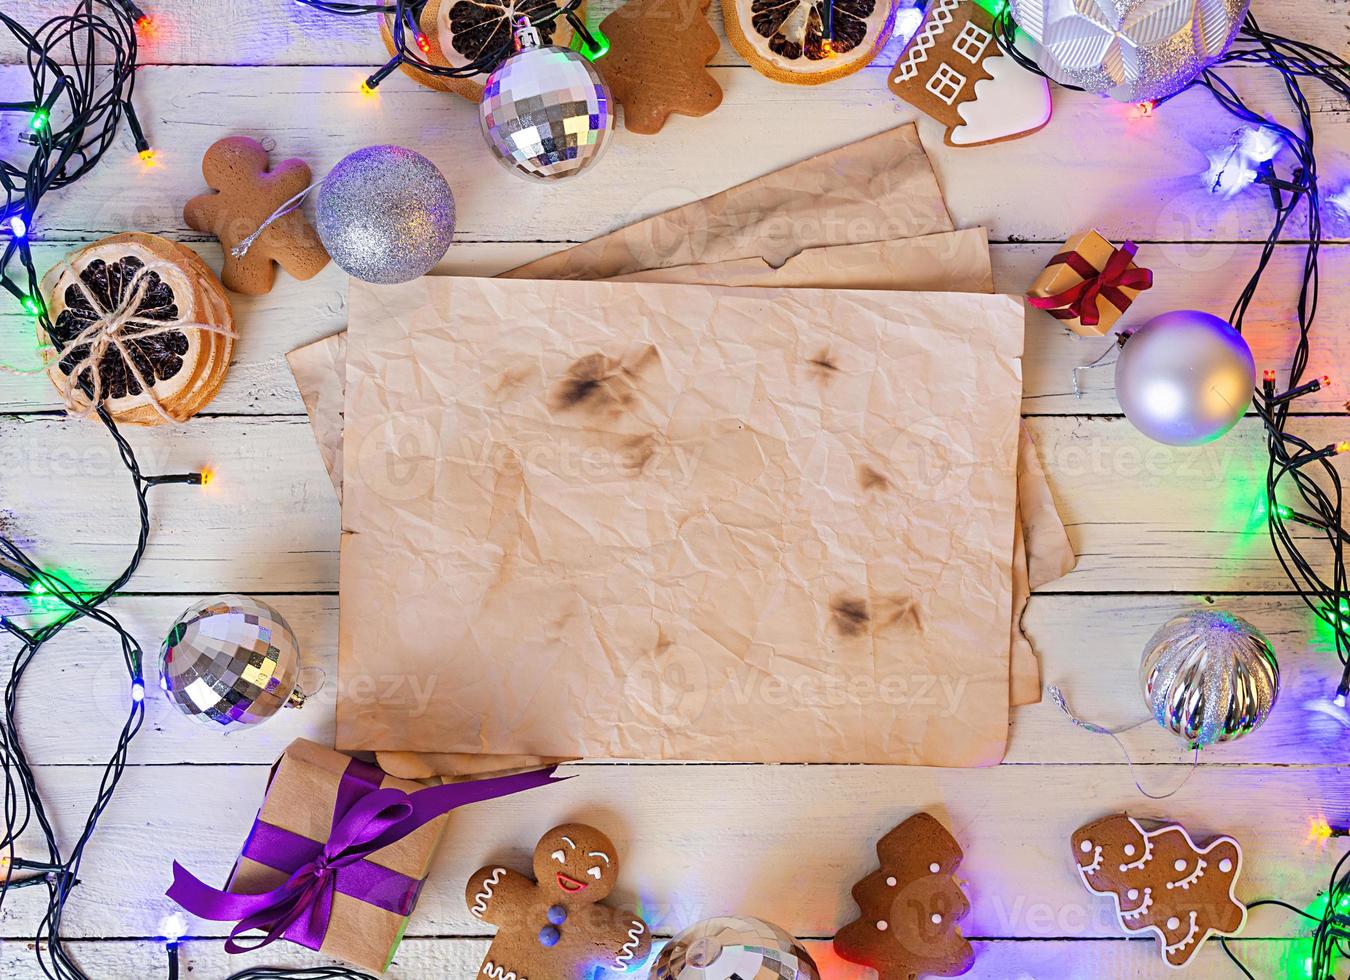 julgodis, ingefära kakor på trä bakgrund. jul bakgrund foto